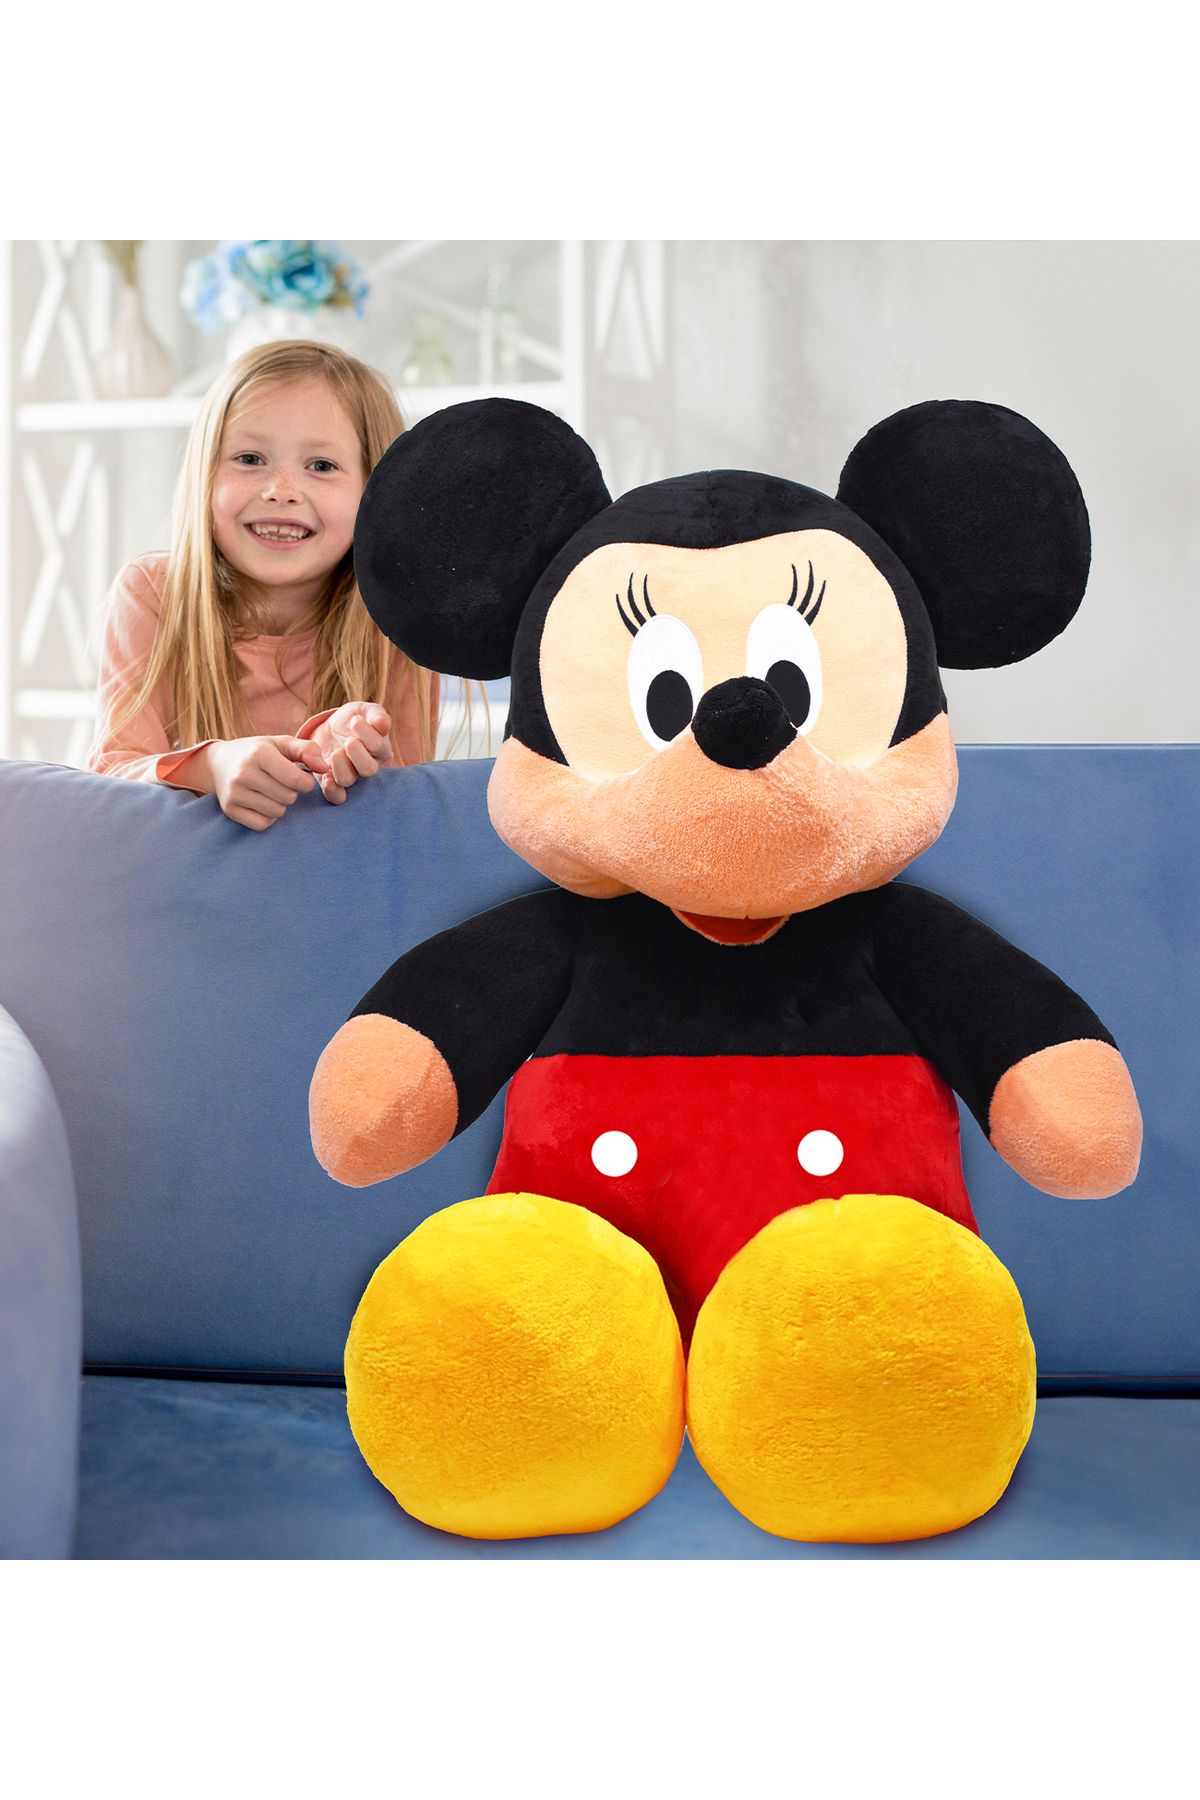 Özgüner Oyuncak Minnie Mouse 120 cm Kocaman Peluş